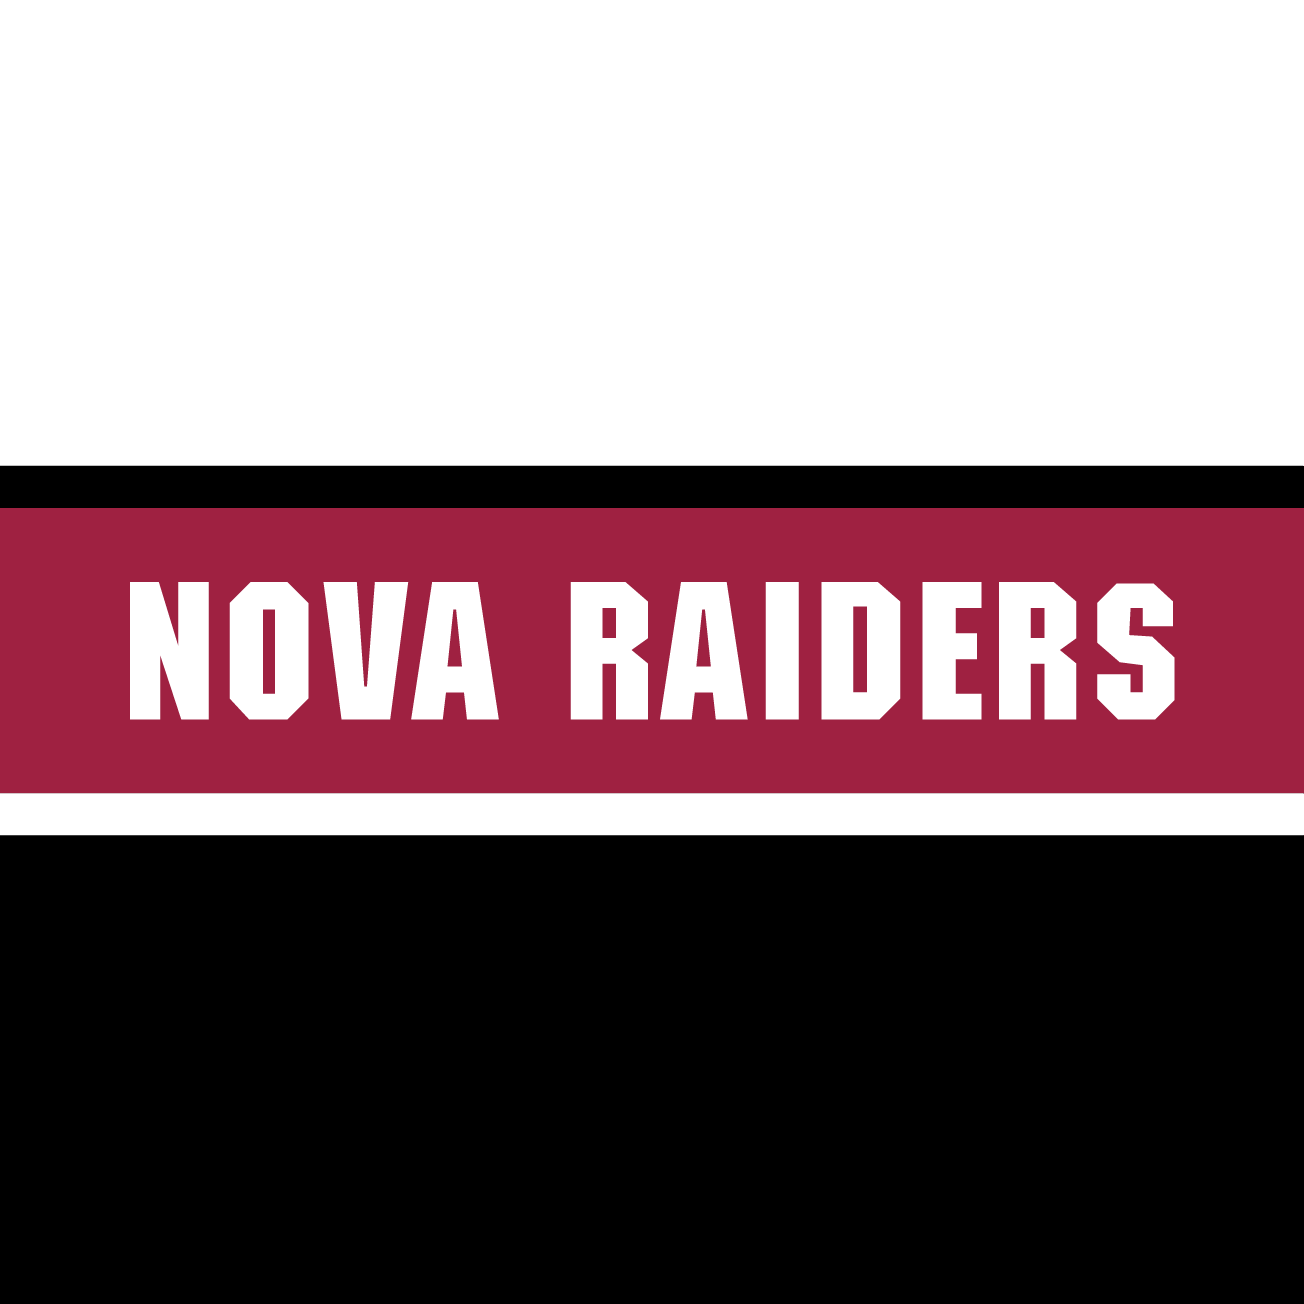 Club Image for NOVA RAIDERS ANNIVERSARY